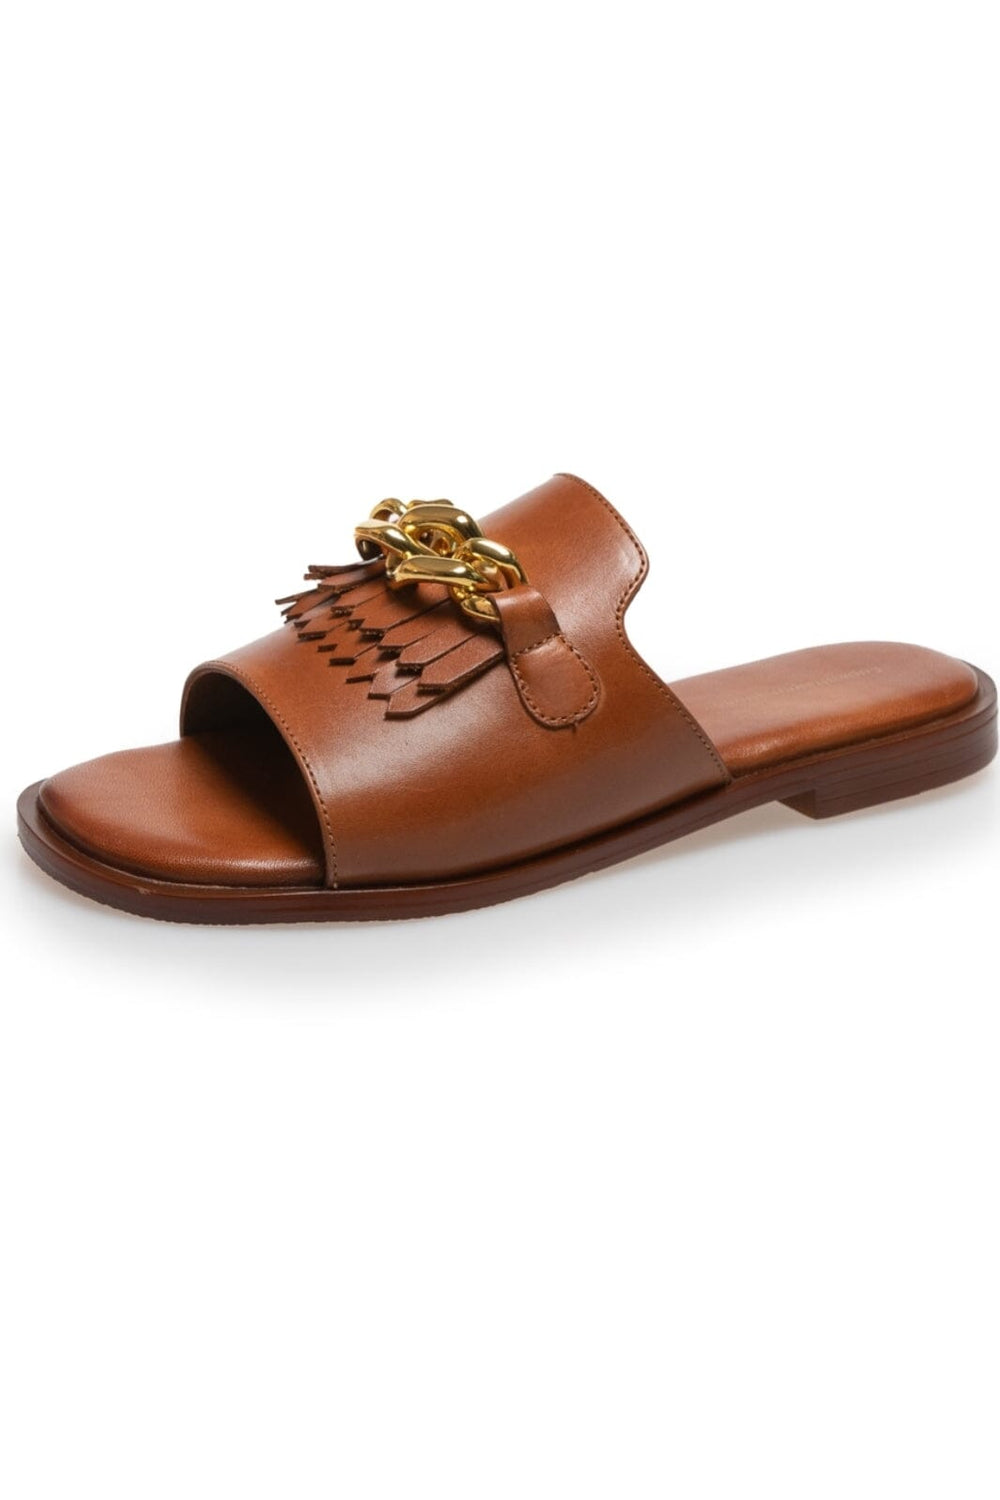 Copenhagen Shoes - Anakin - 0241 Cognac Sandaler 